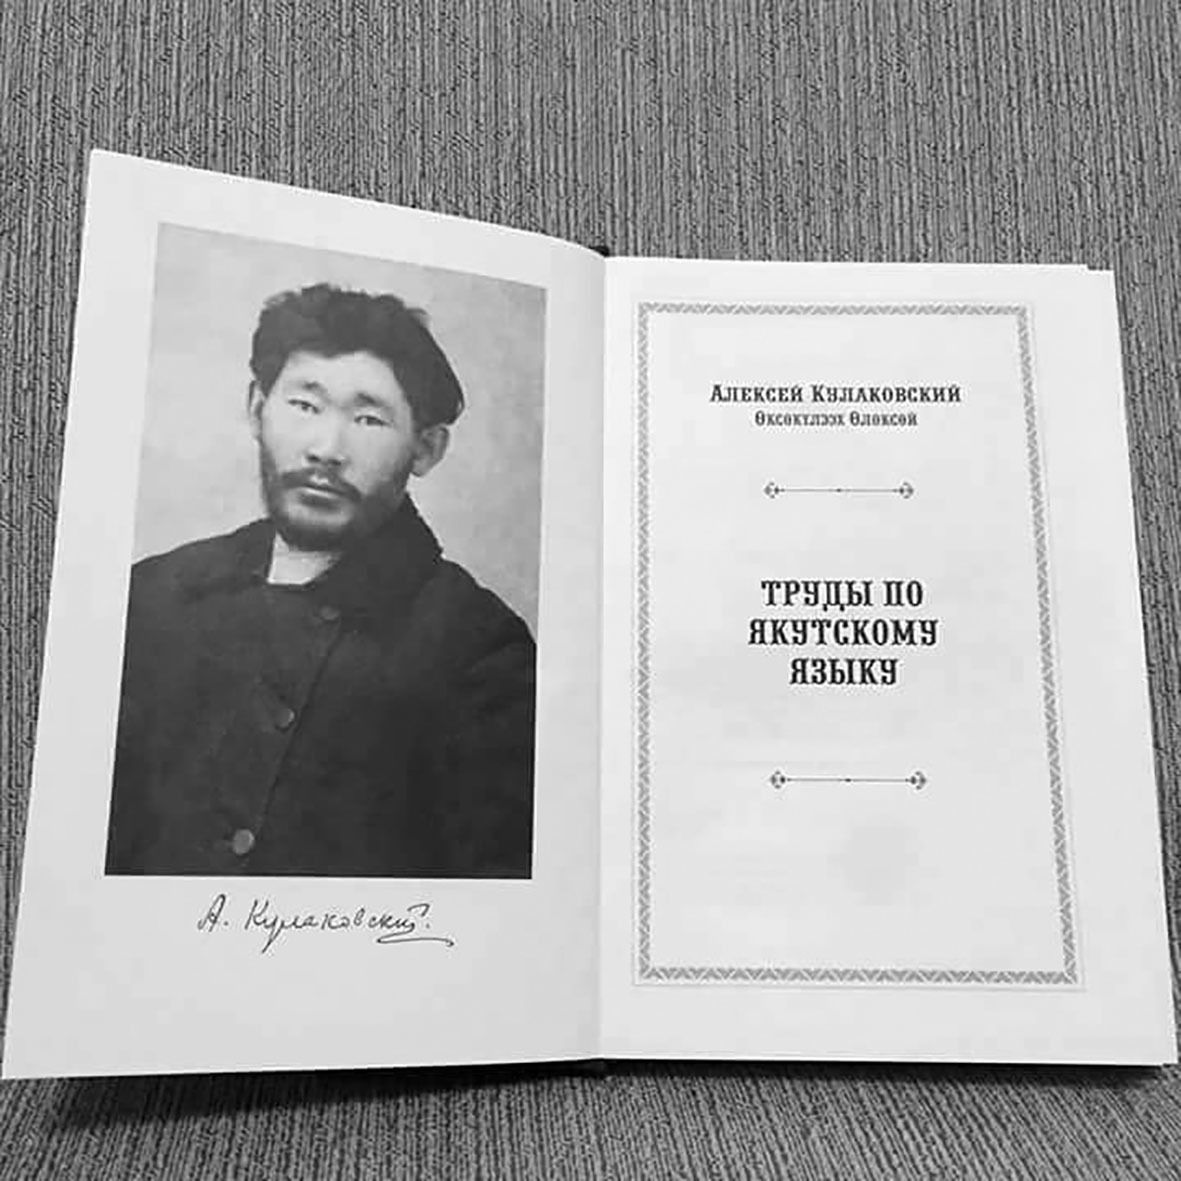 Состоится презентация книги Алексея Кулаковского «Труды по якутскому языку» 